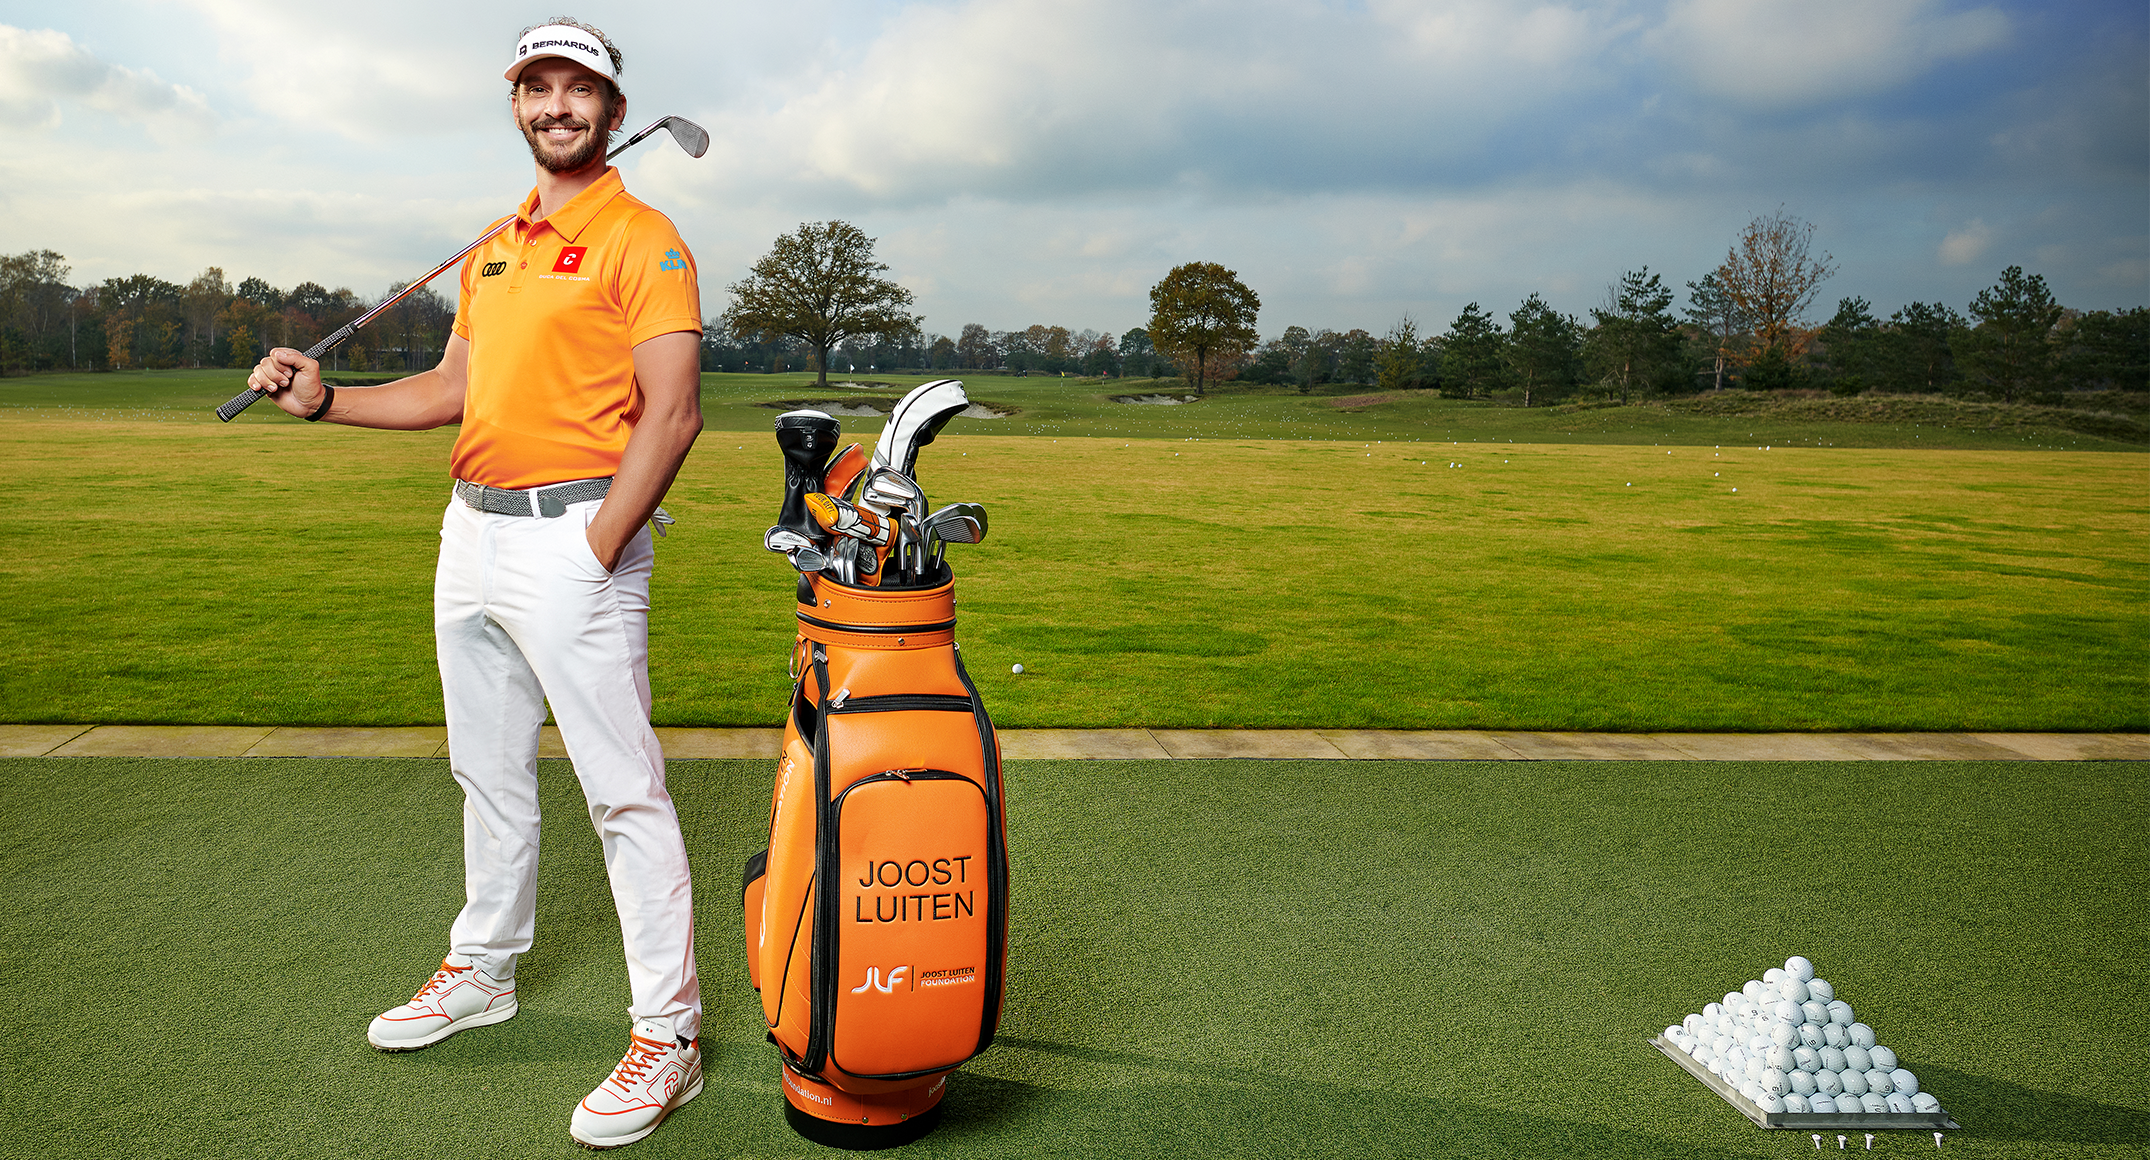 Internationaal golfmerk Duca del Cosma is de nieuwe sponsor van Joost Luiten